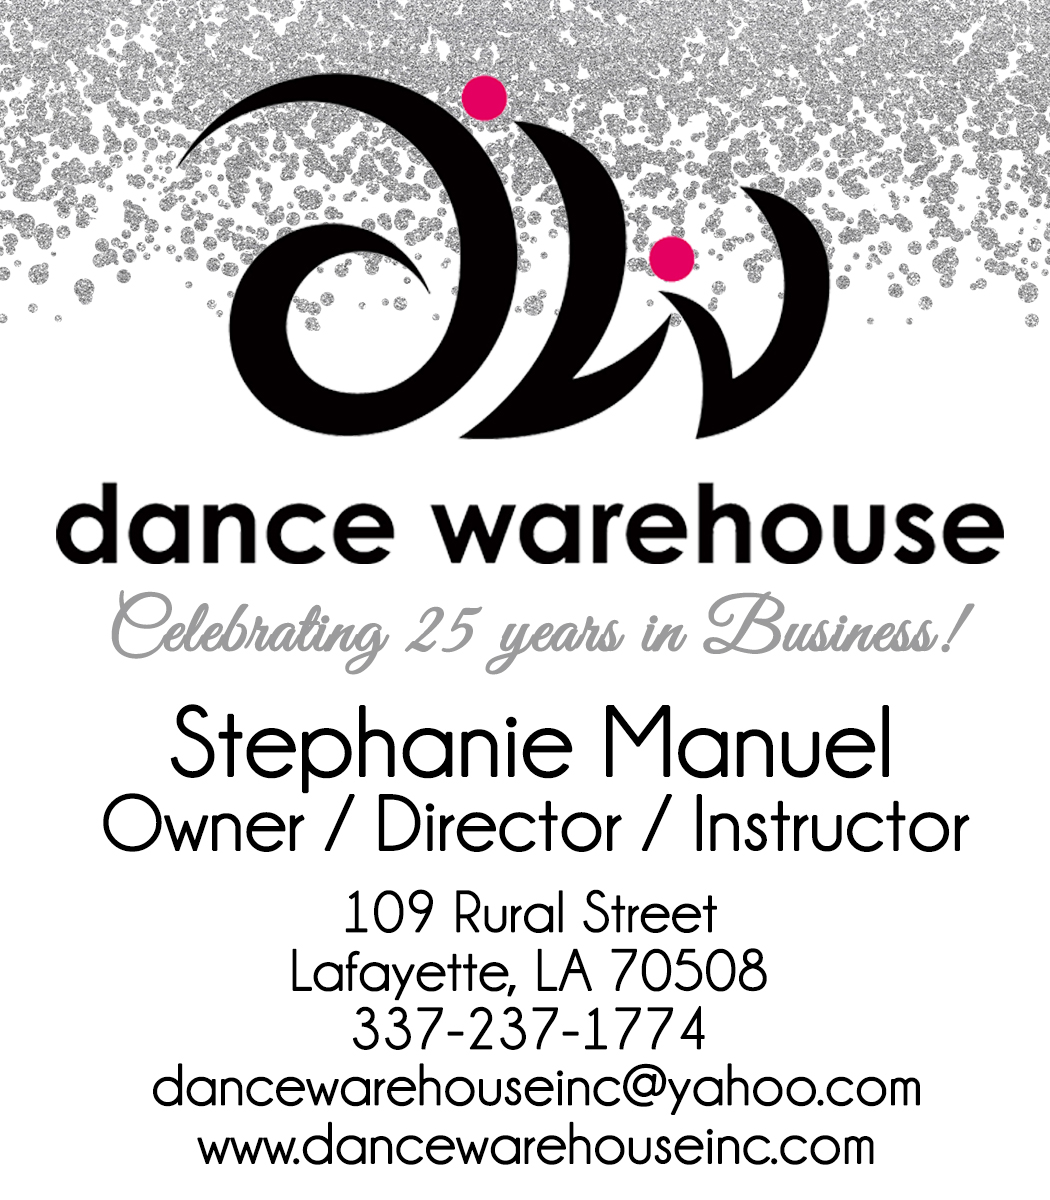 Dance Warehouse, Inc.